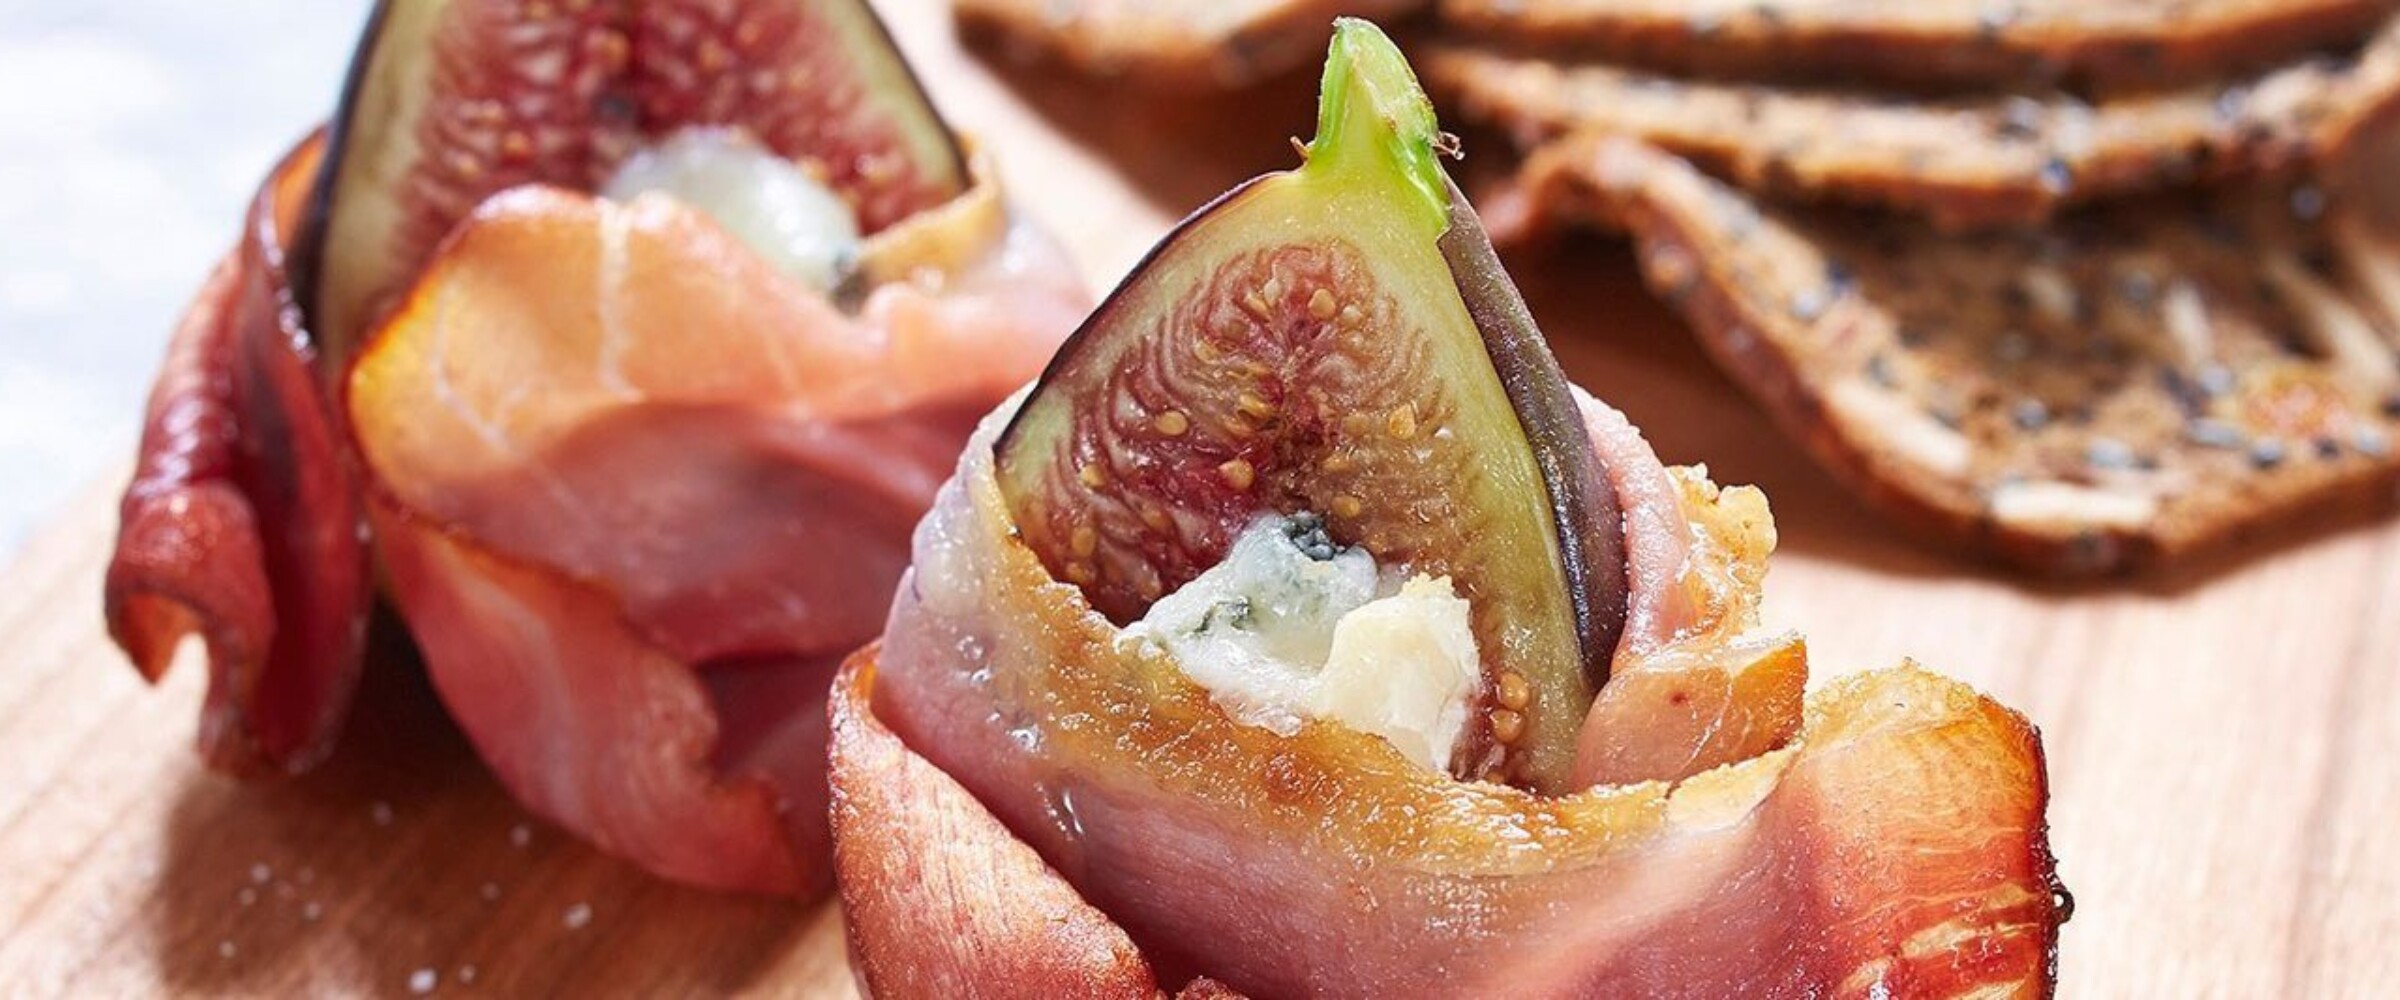 Prosciutto wrapped figs